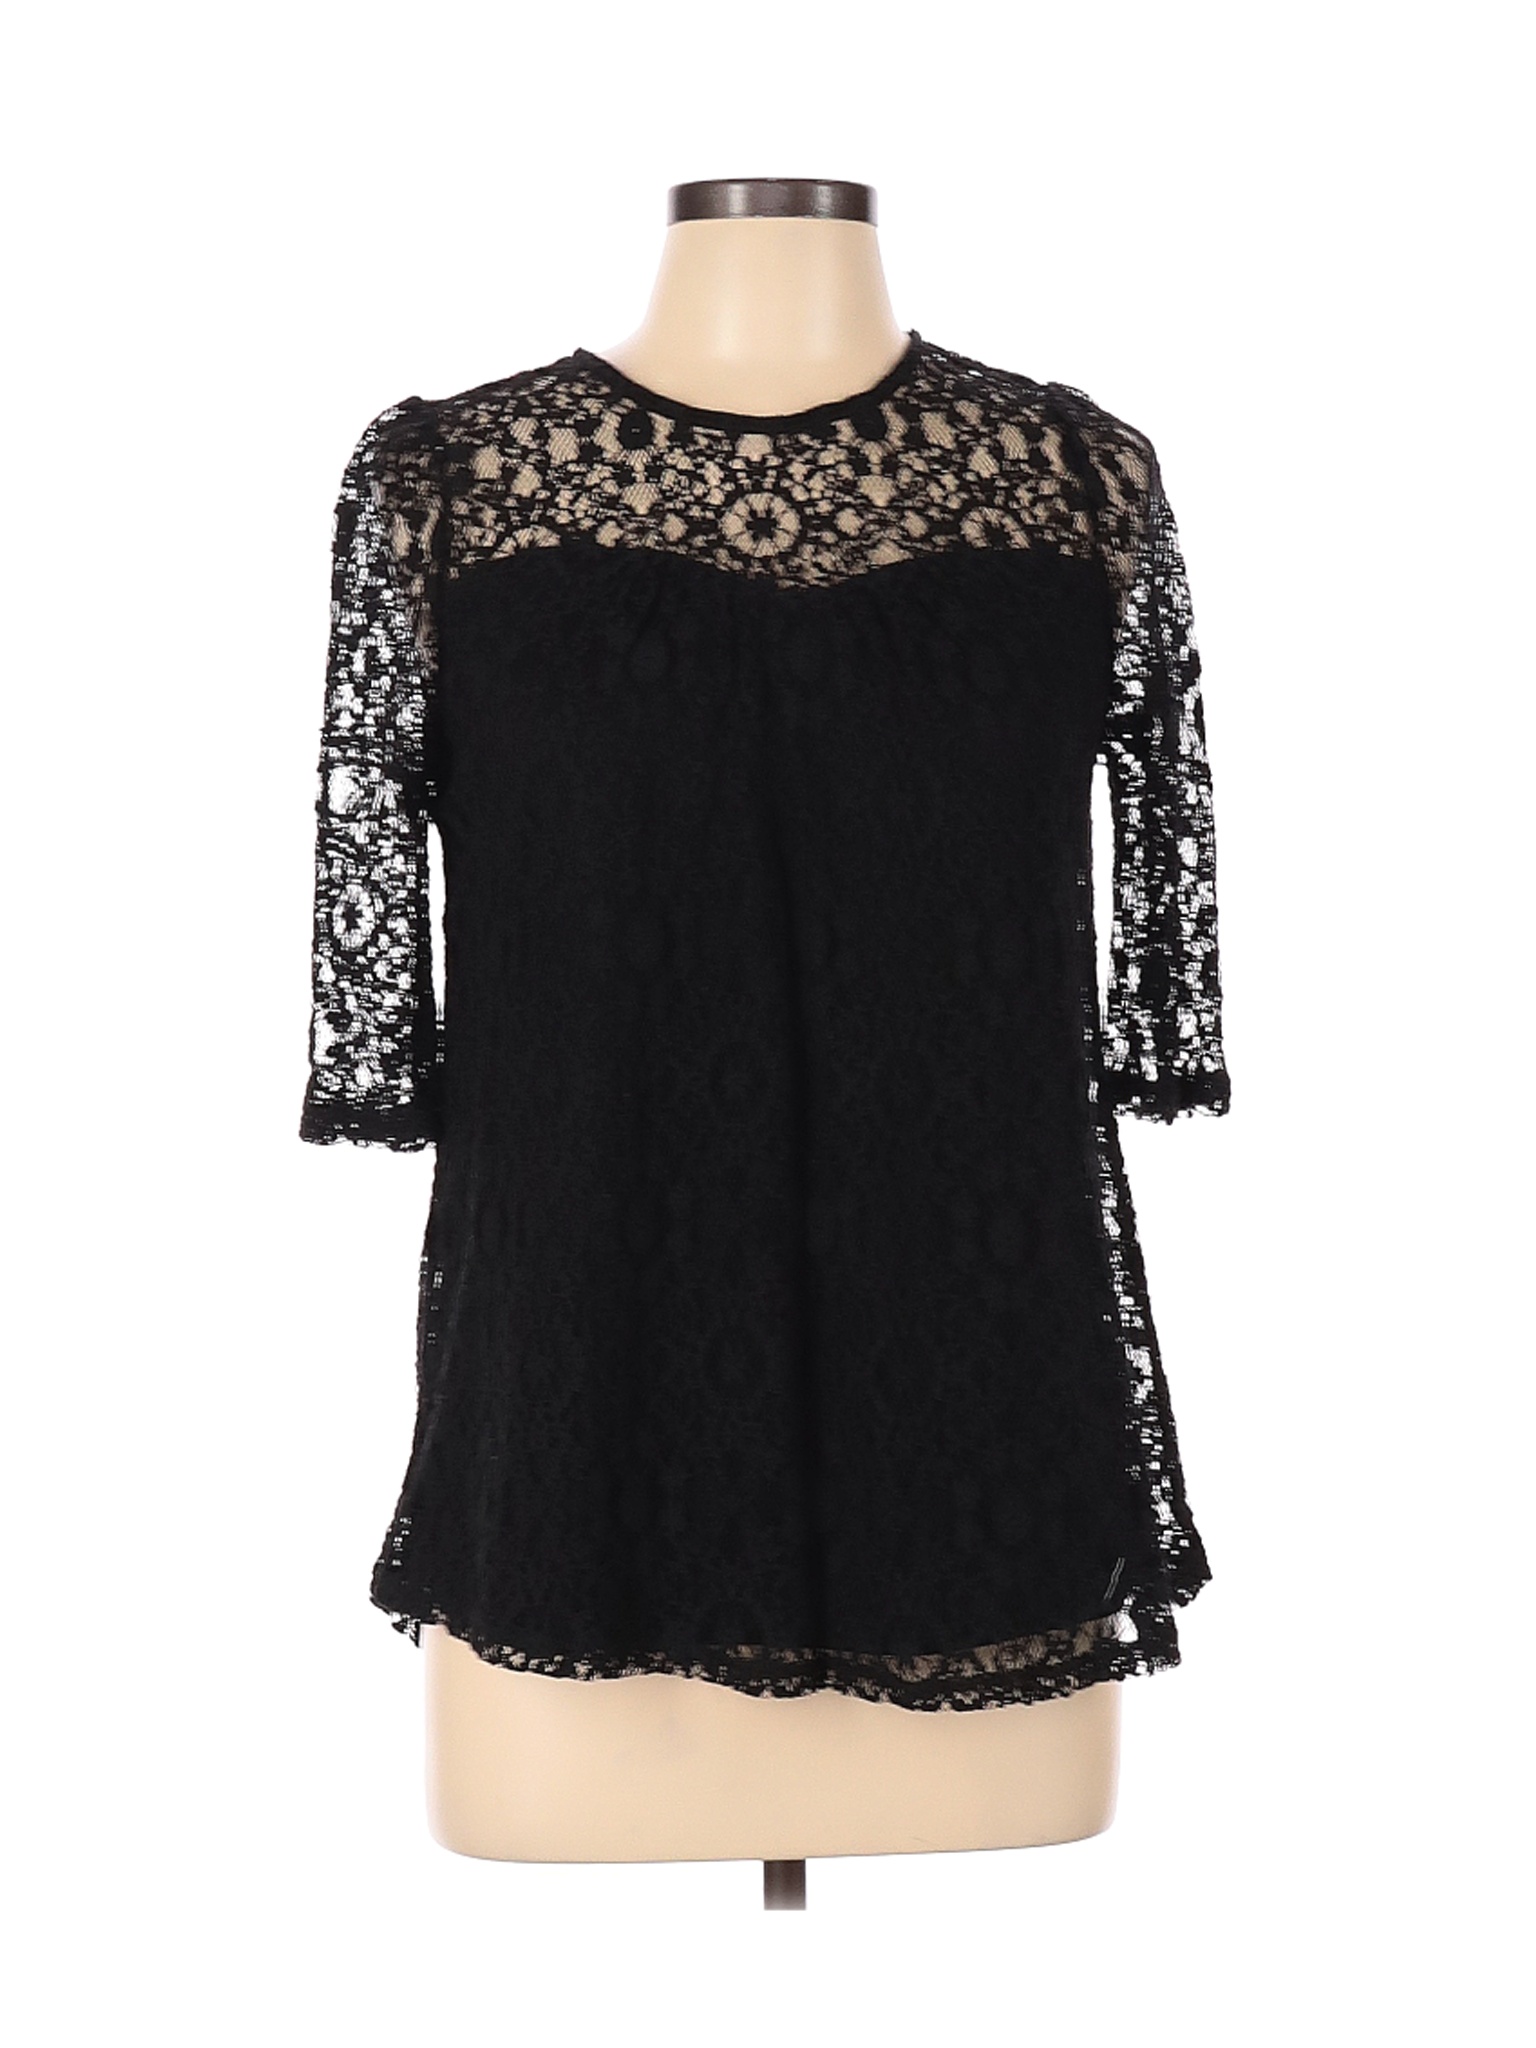 Monteau Women Black Short Sleeve Top L | eBay